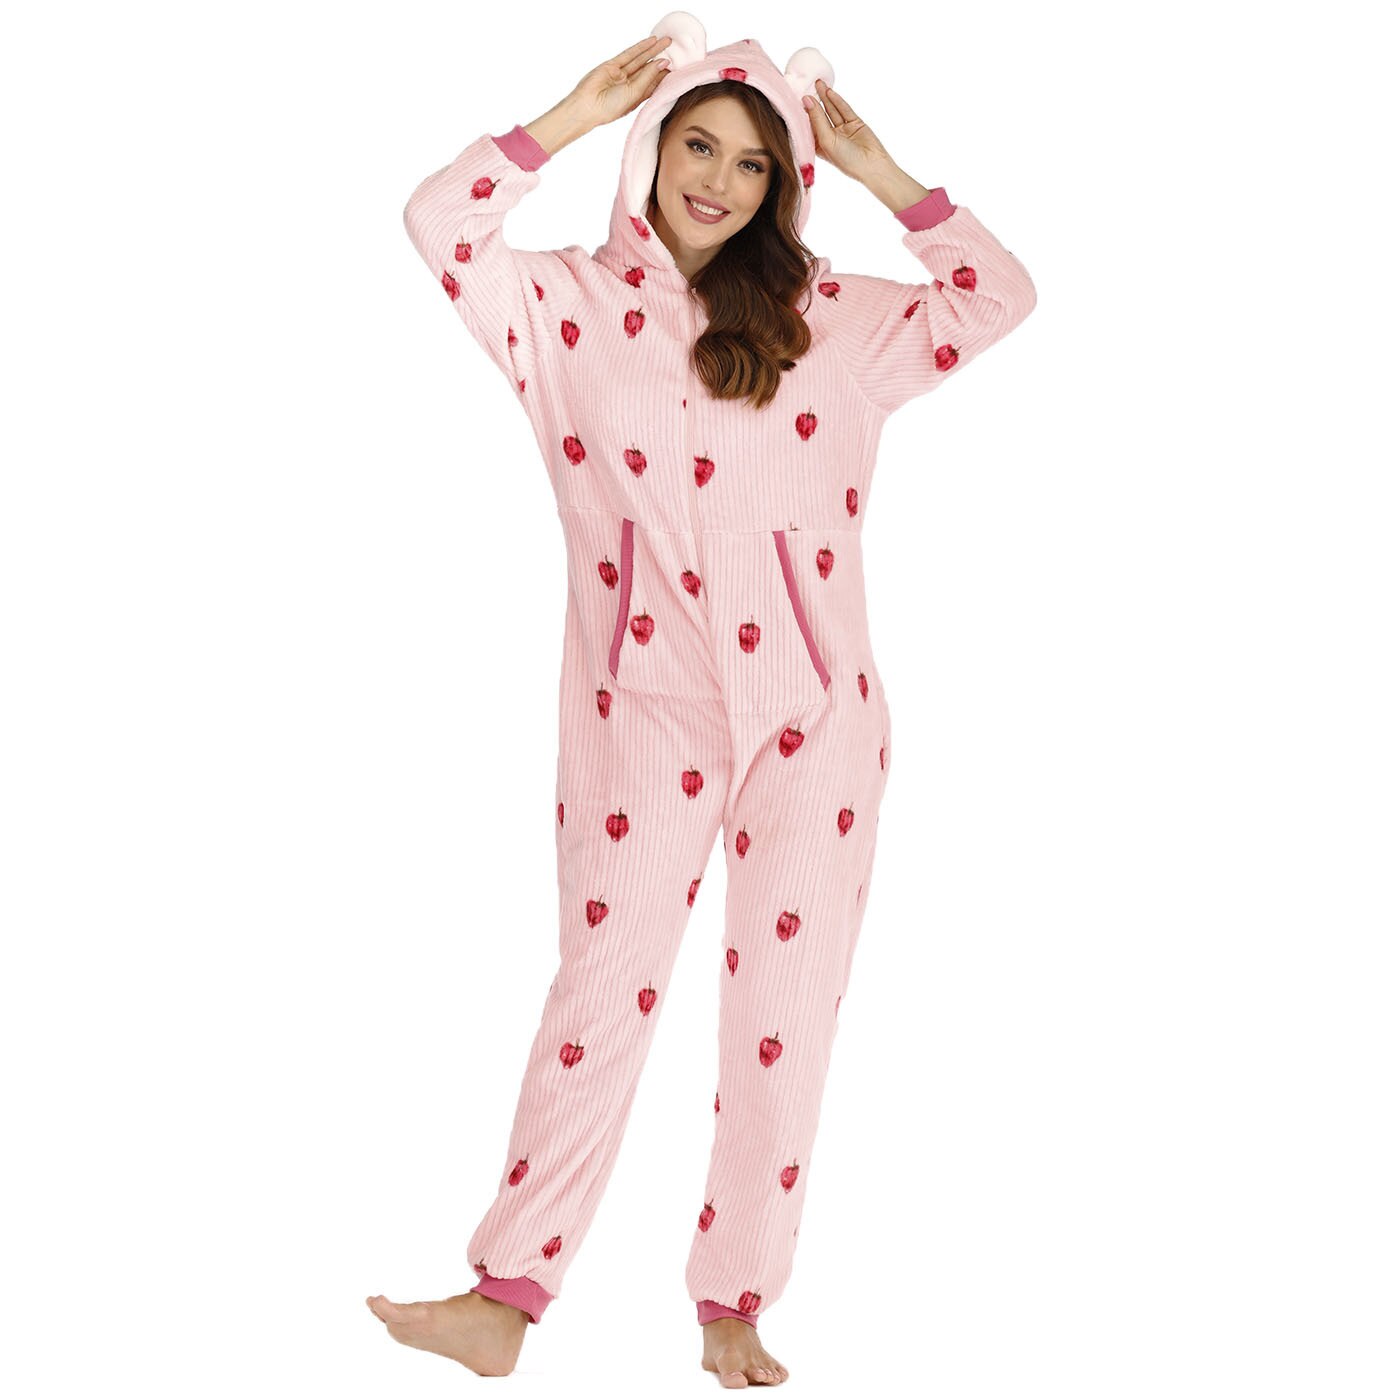 Women Jumpsuit Pajama Hooded With Pocket Onesies Sleepwear Pink Strawberry Printed Zipper Full Sleeve Homewear Casual Pyjama